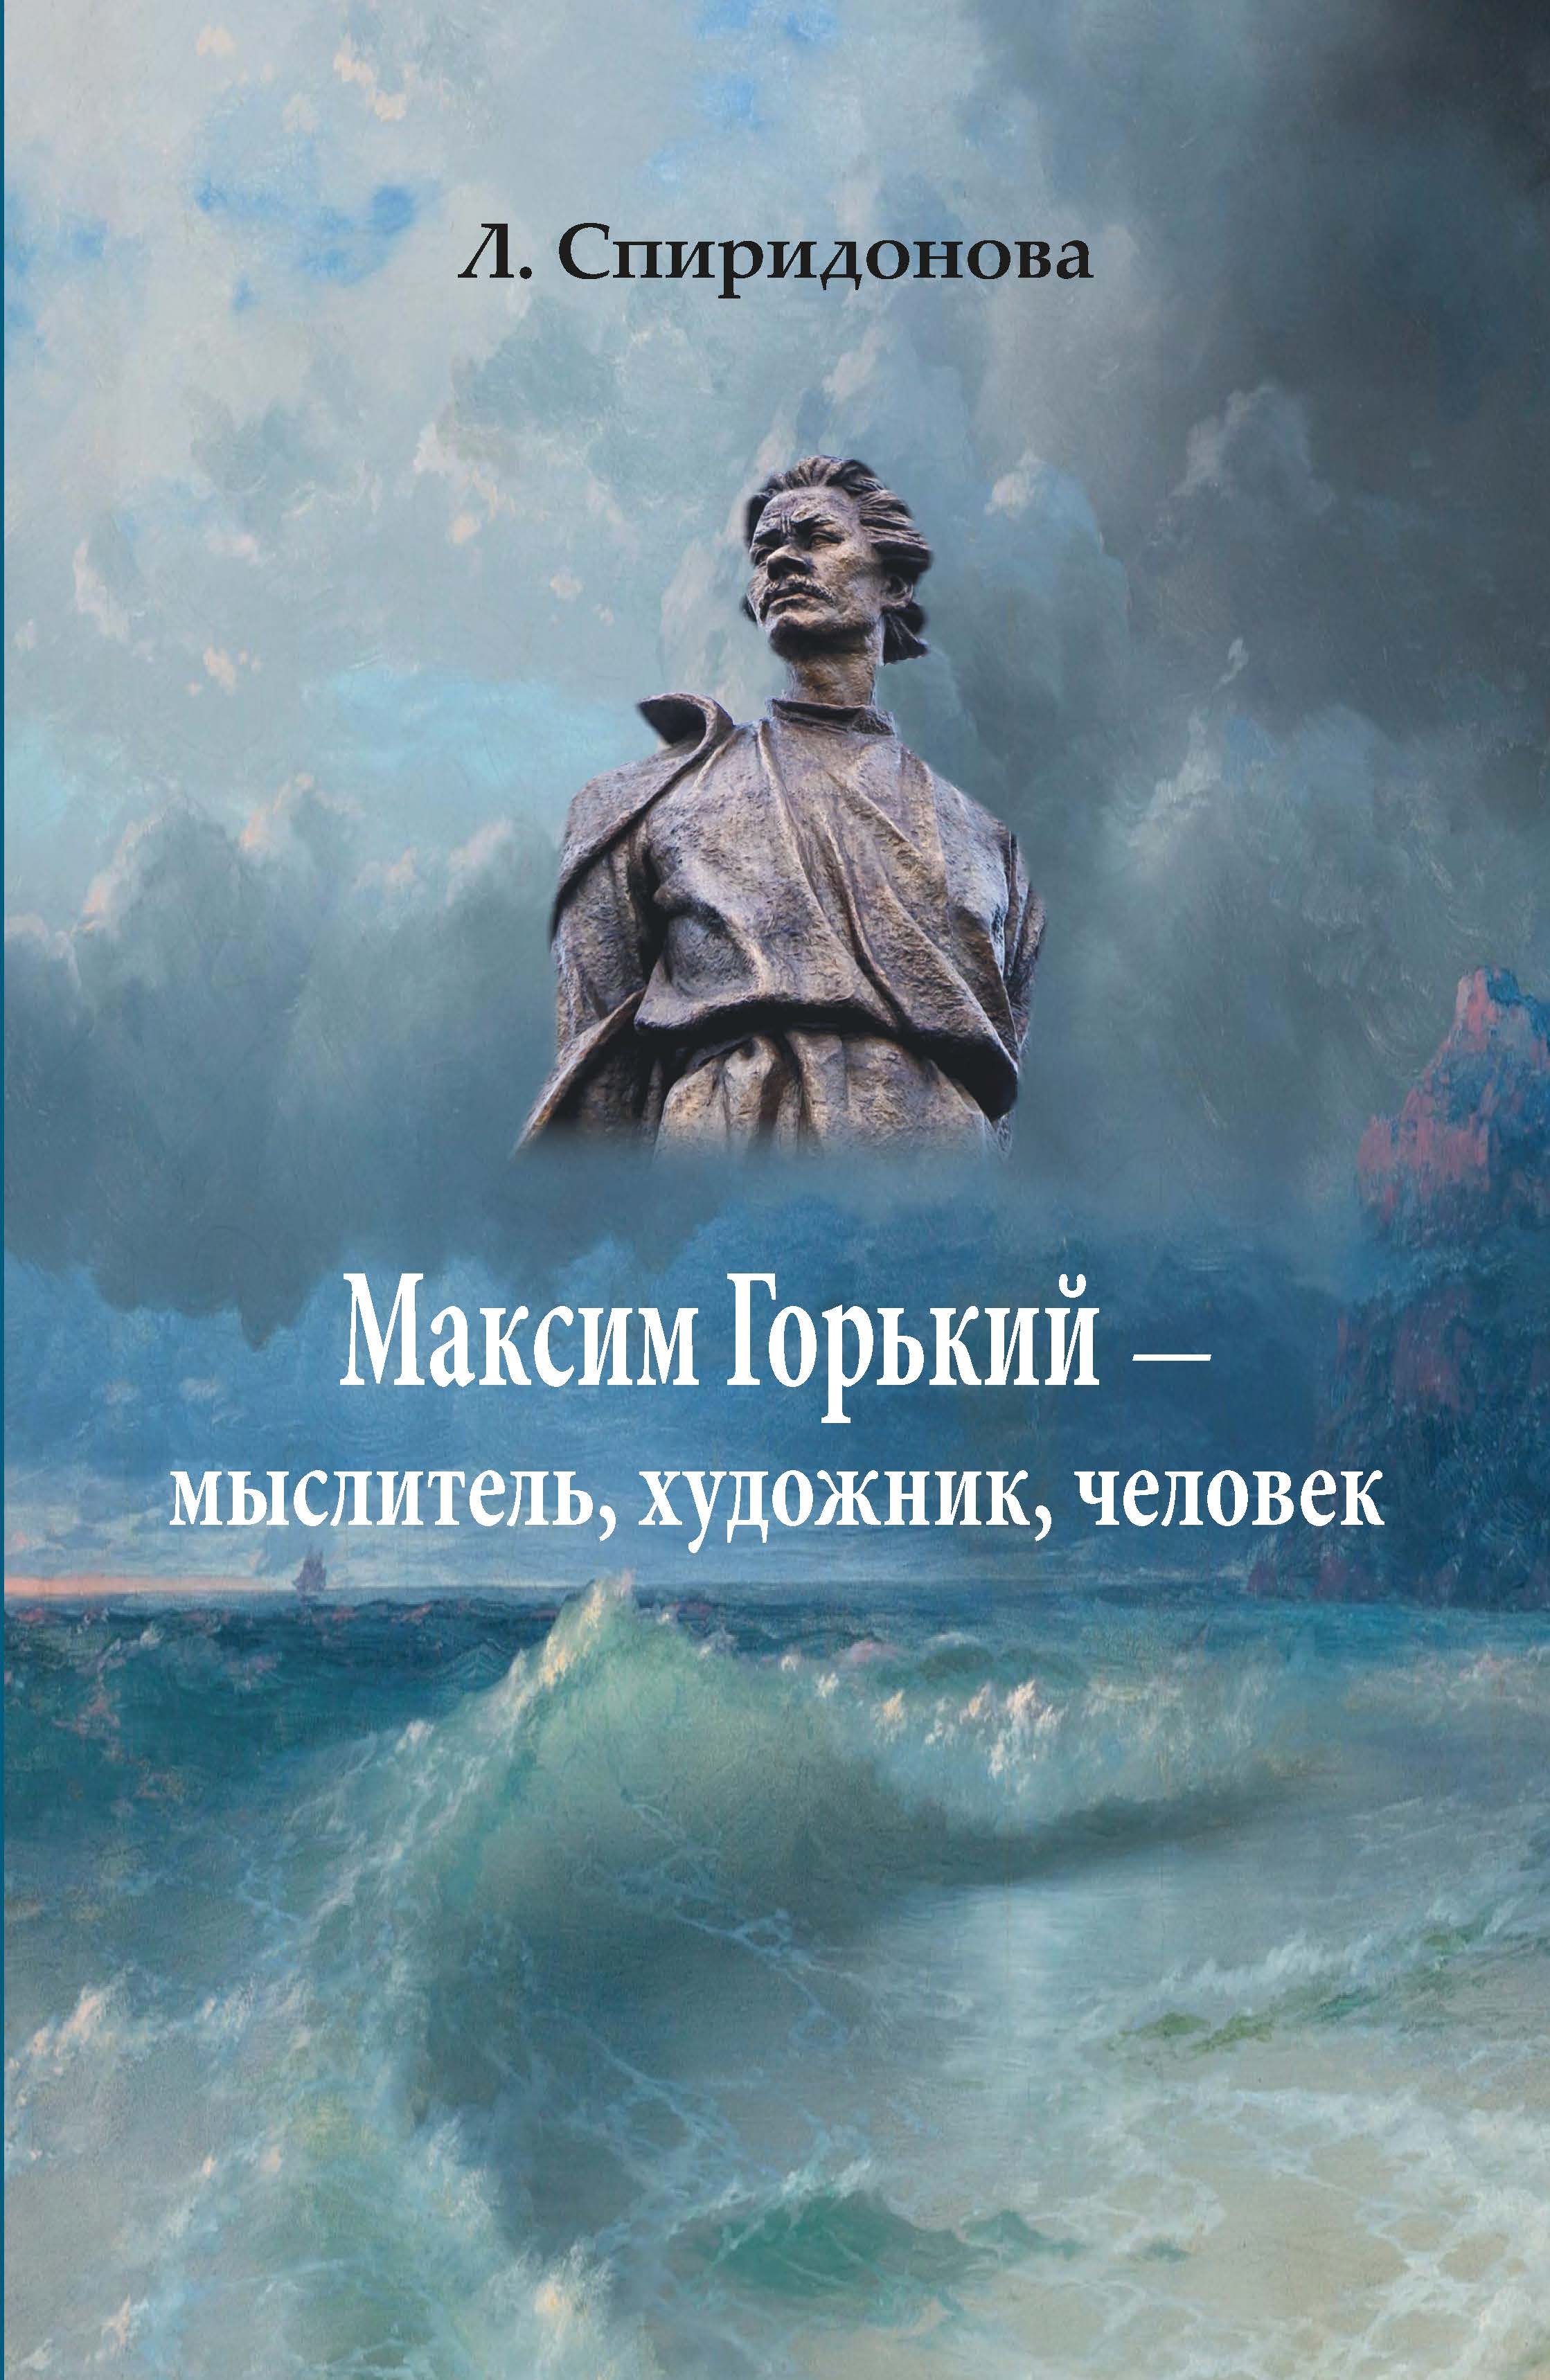 Cover of Максим Горький - мыслитель, художник, человек